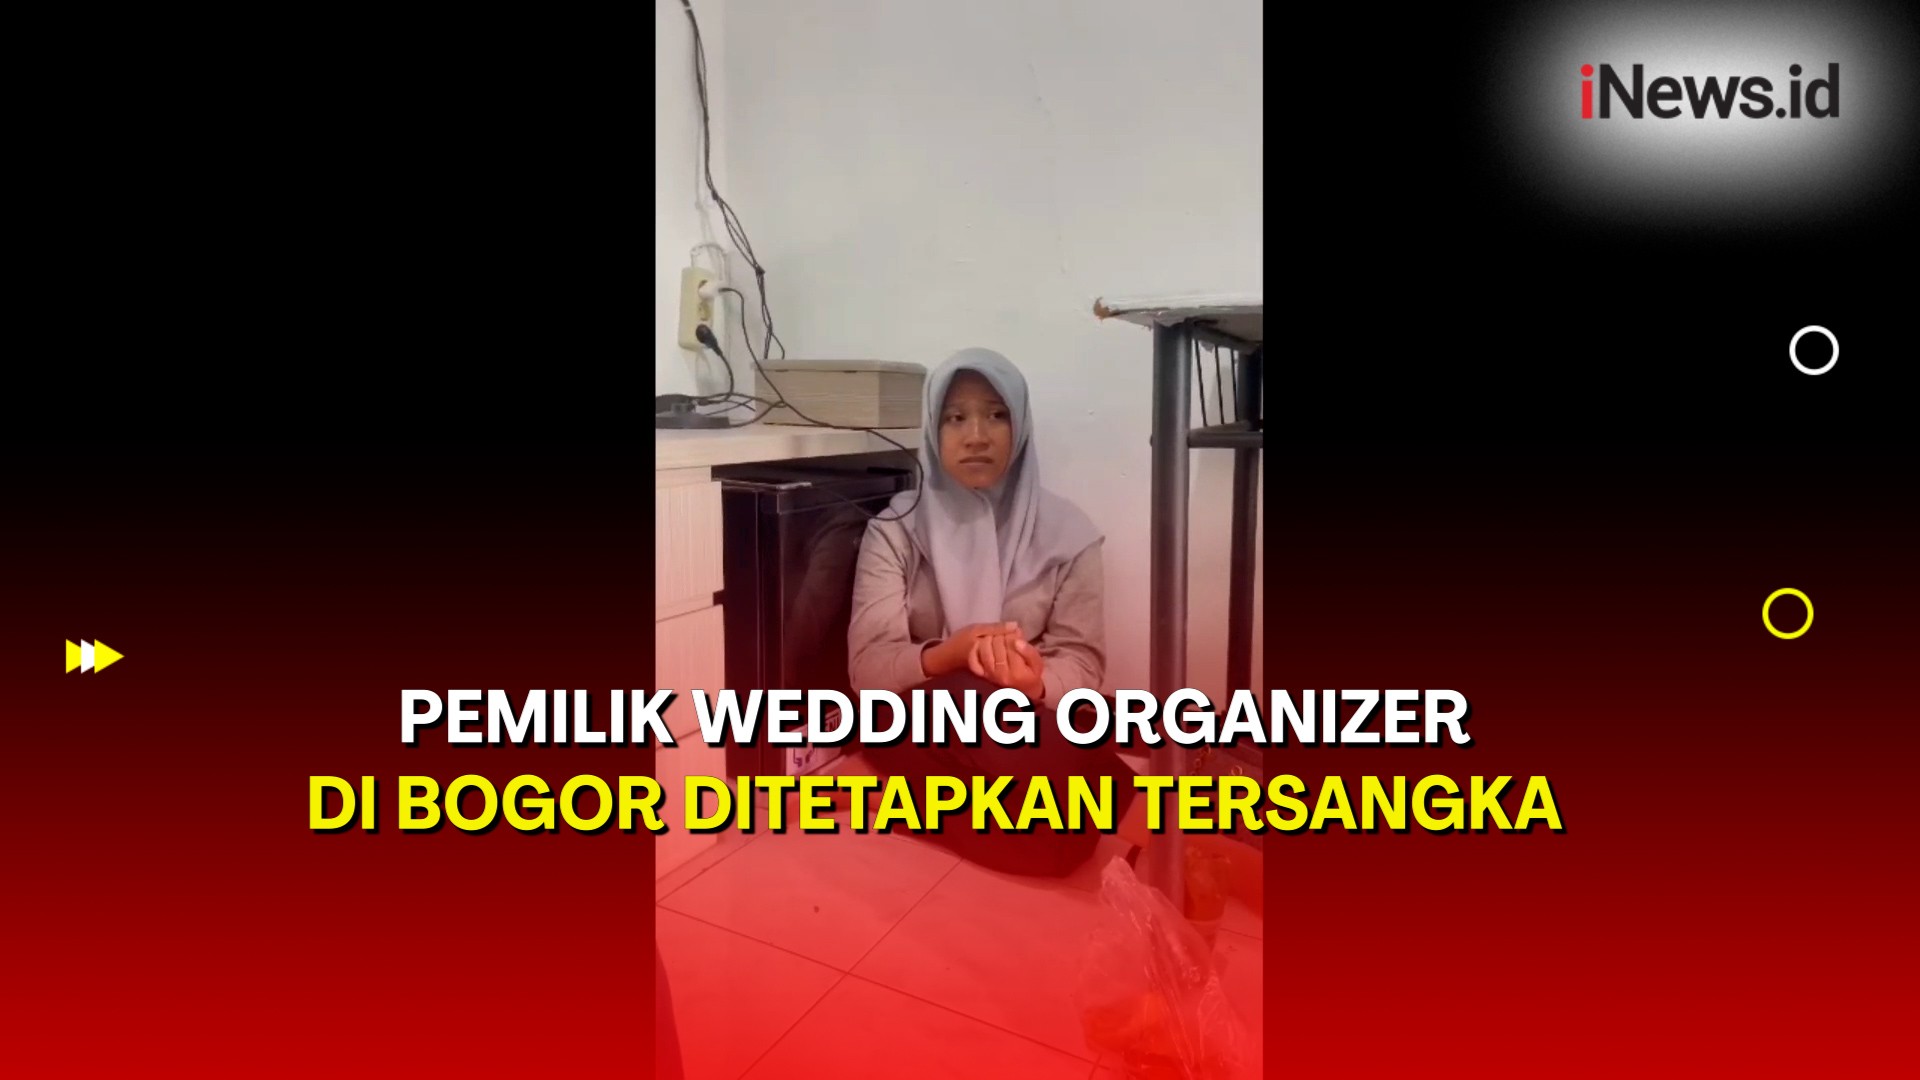 Polisi Tetapkan Pemilik Wedding Organizer yang Tipu 7 Calon Pengantin di Bogor sebagai Tersangka